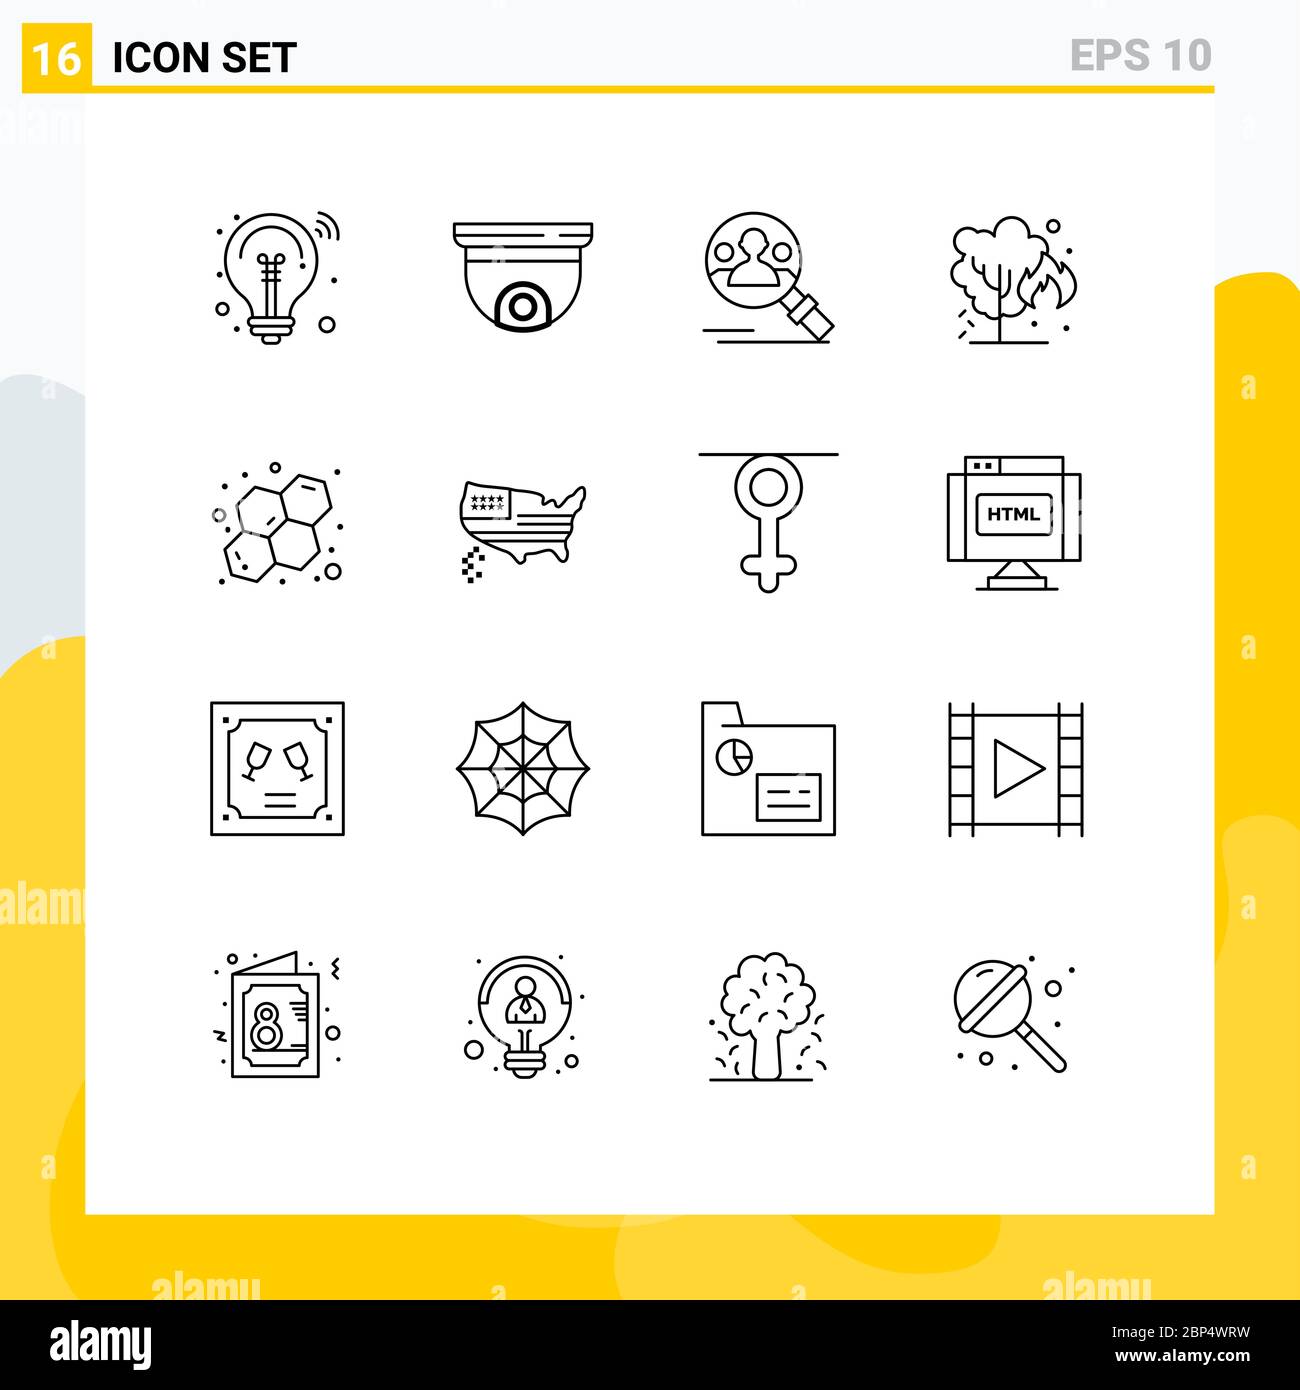 16 icone creative segni e simboli moderni di Atom, verde, sorveglianza, ambiente, utente elementi di disegno vettoriale editabili Illustrazione Vettoriale